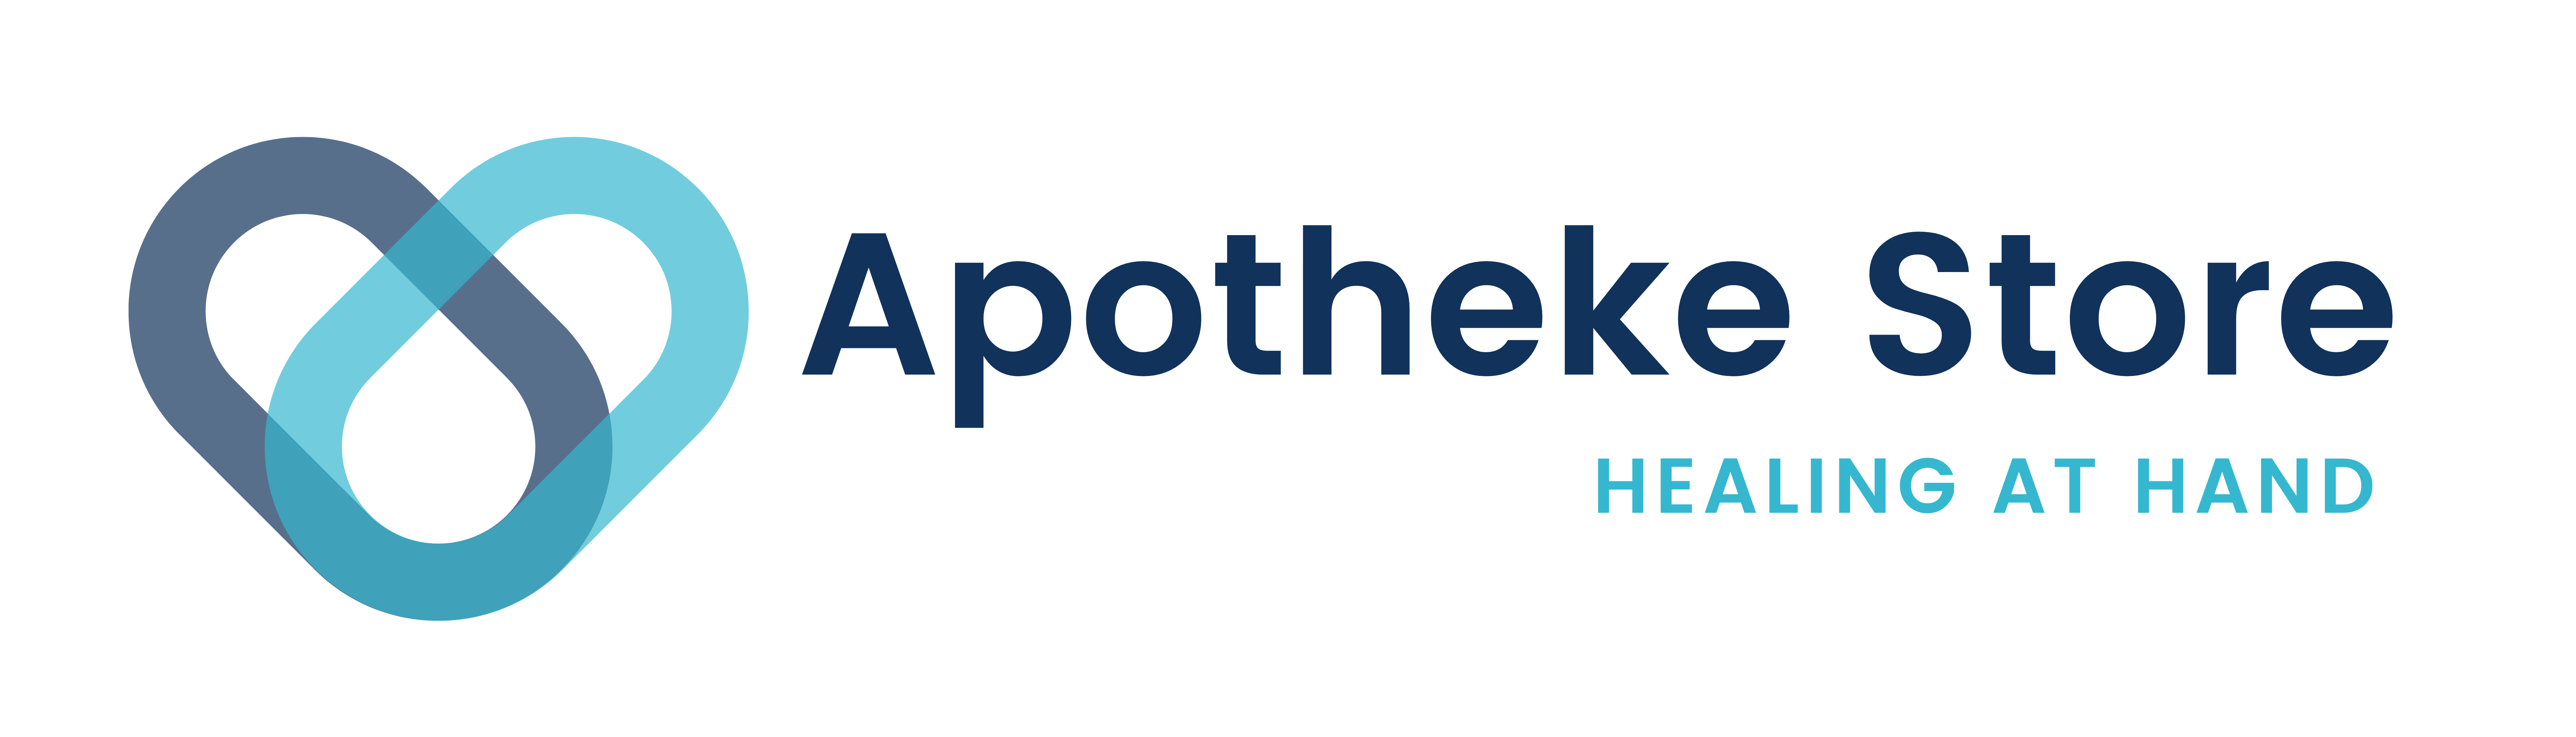 Apotheke Store Logo